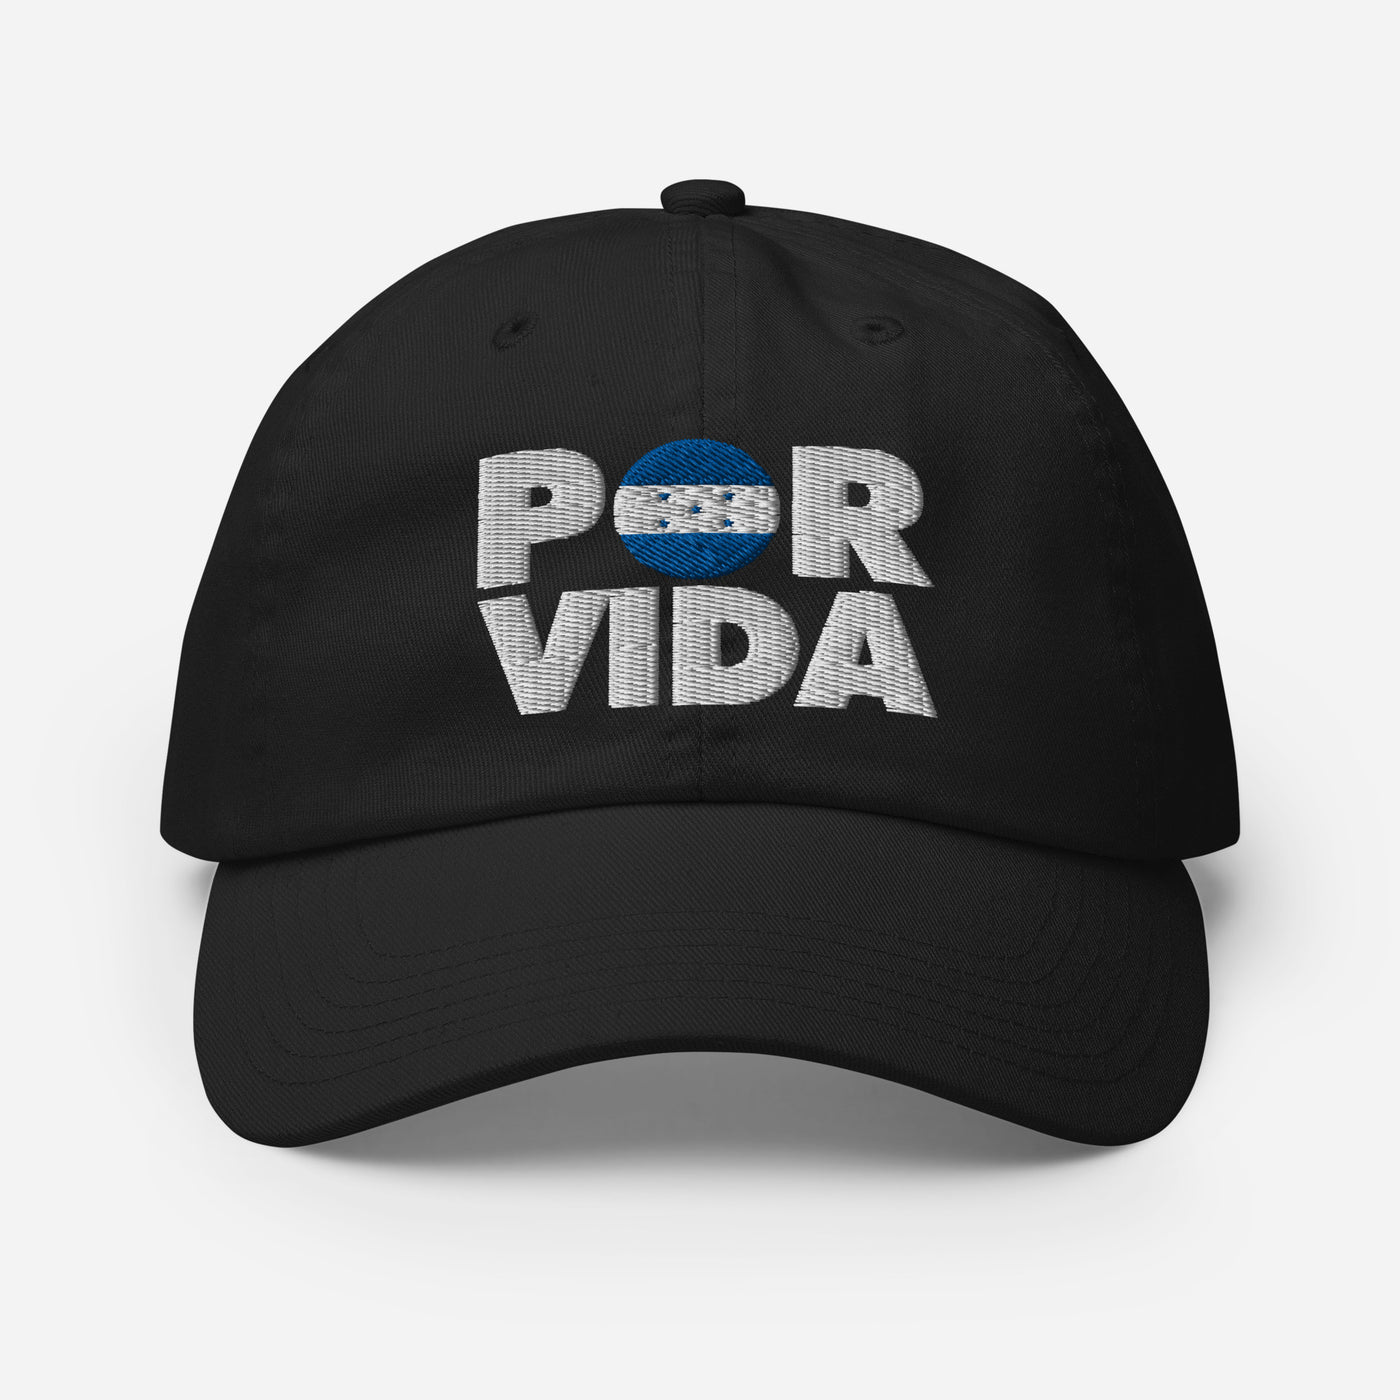 Honduras POR VIDA Champion Dad Cap